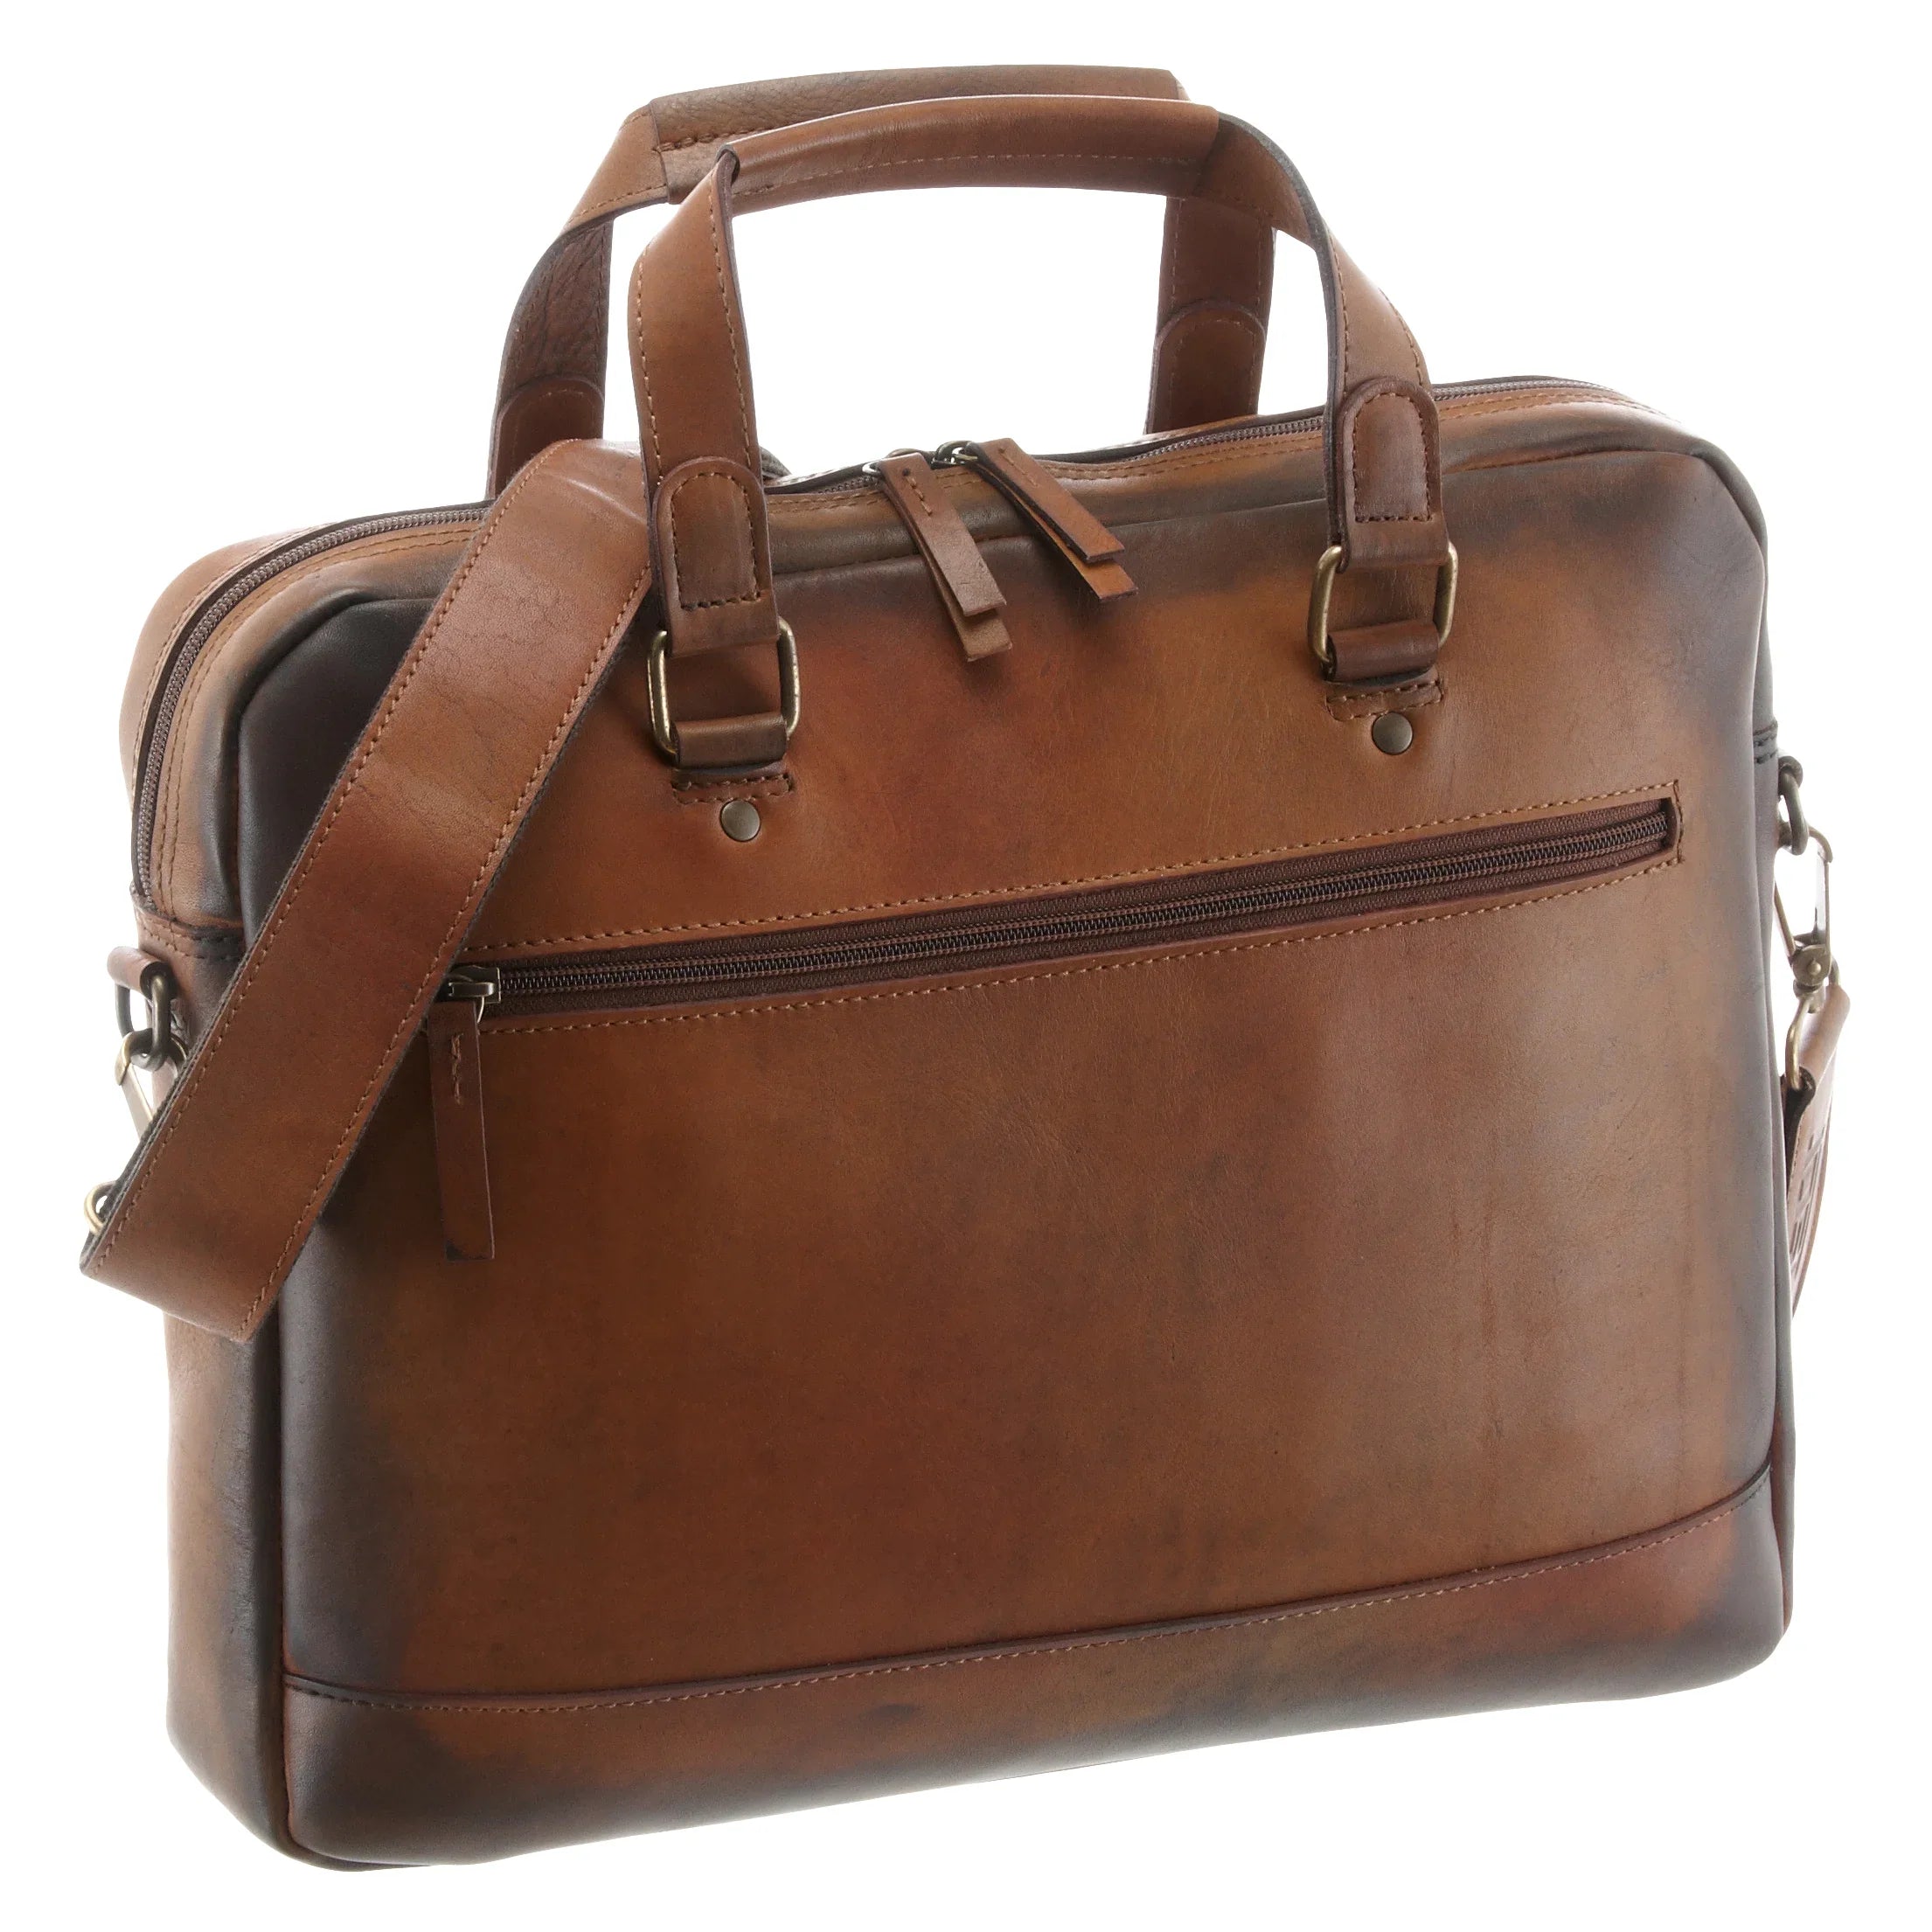 Jost Randers RV briefcase 38 cm - cognac